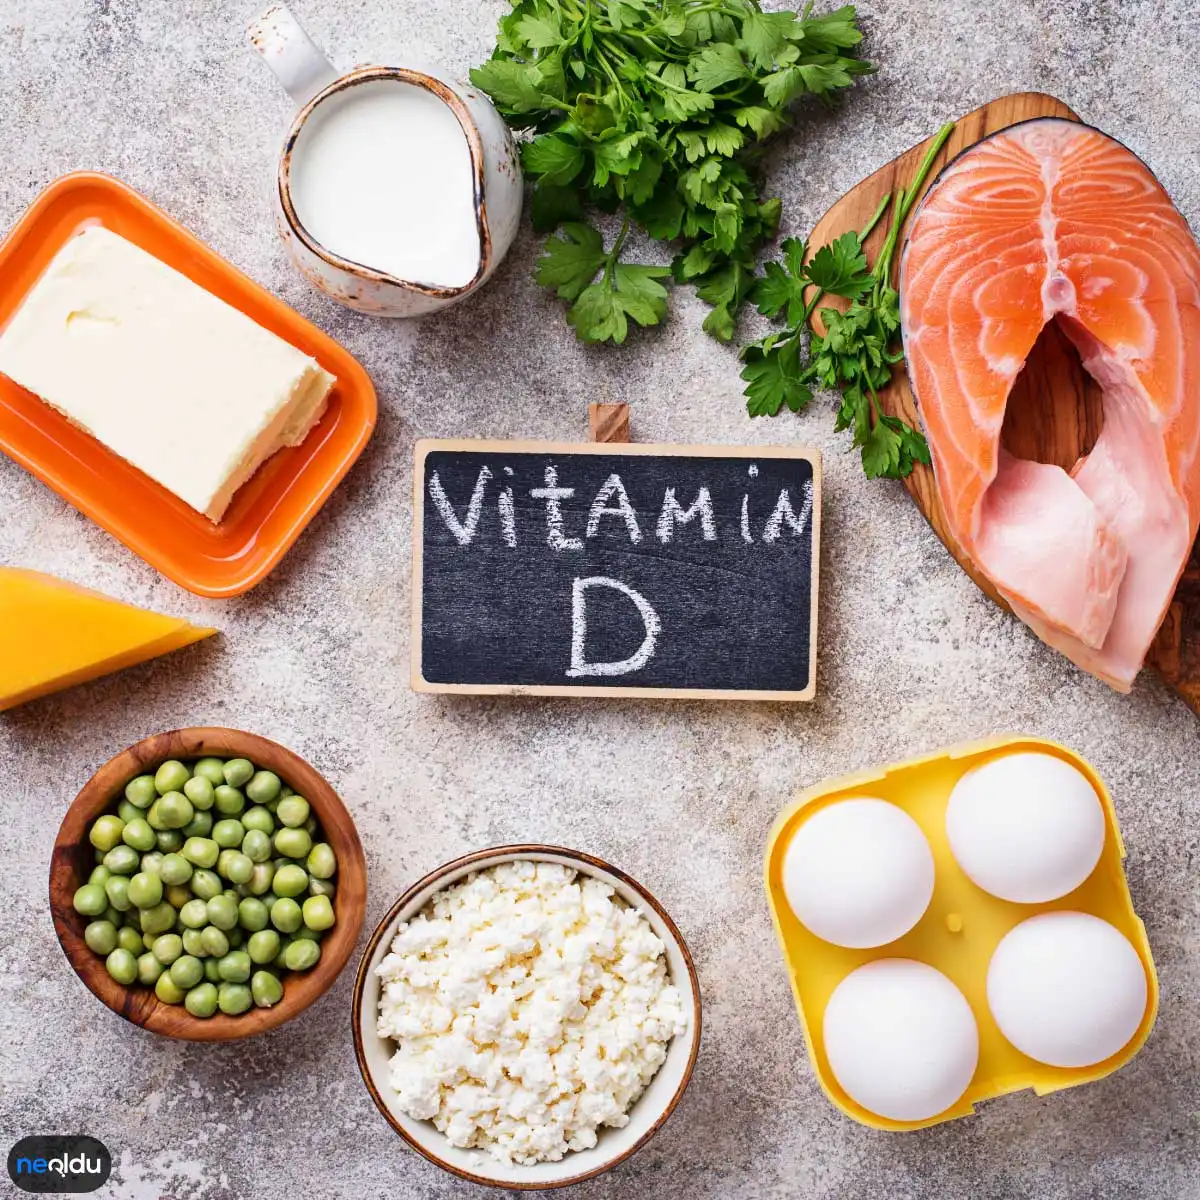 D Vitamini Nedir, Faydaları ve D Vitamini Eksikliği